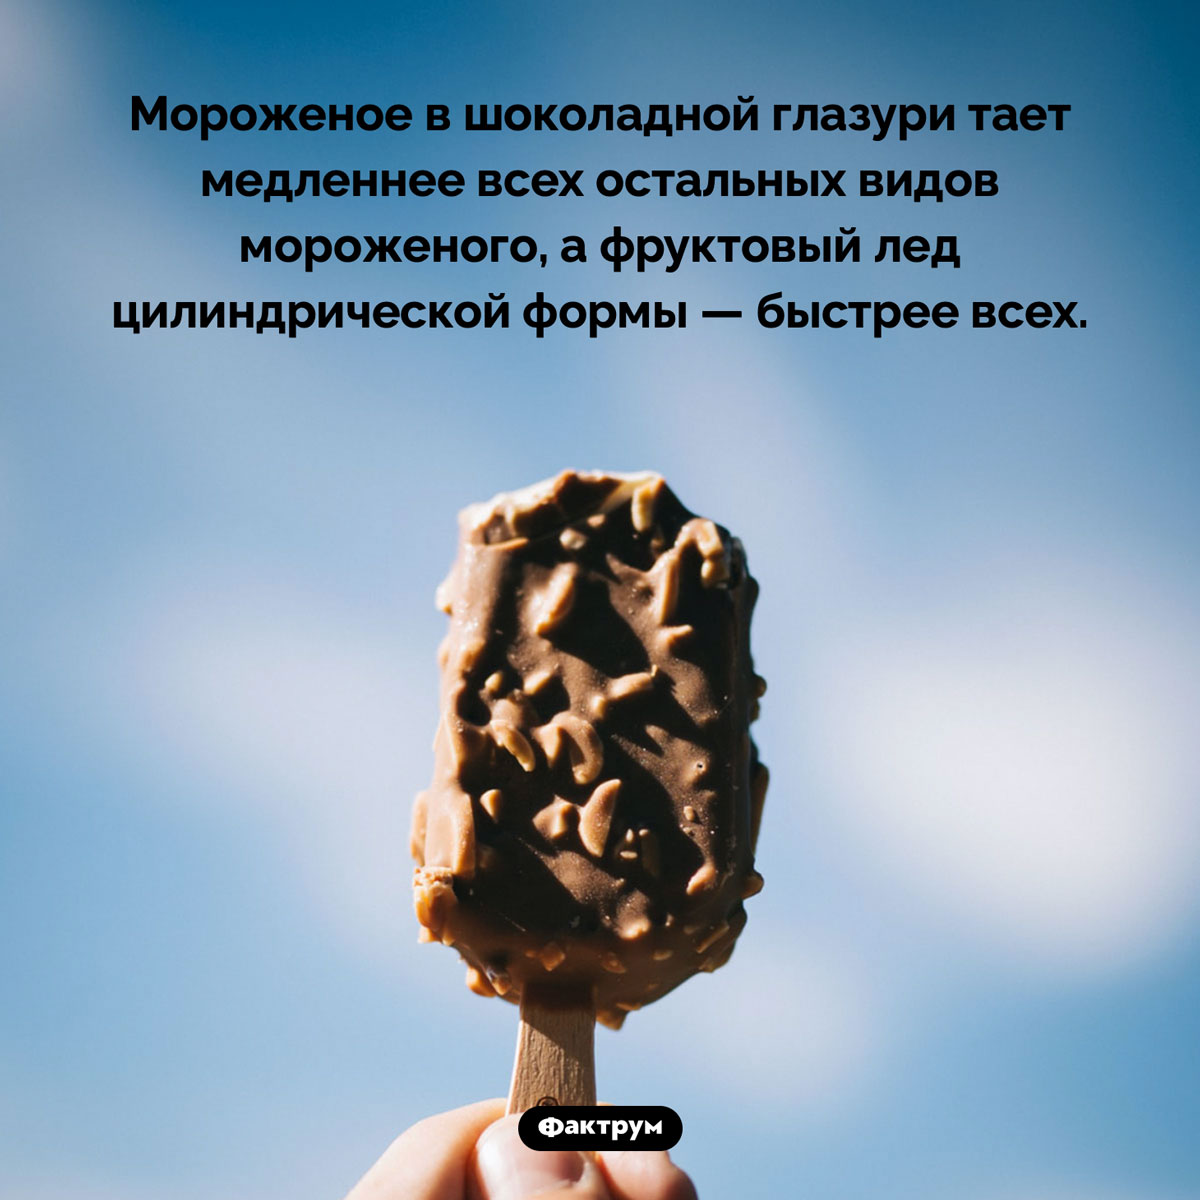 Какое мороженое тает медленнее всех. Мороженое в шоколадной глазури тает медленнее всех остальных видов мороженого, а фруктовый лед цилиндрической формы — быстрее всех.